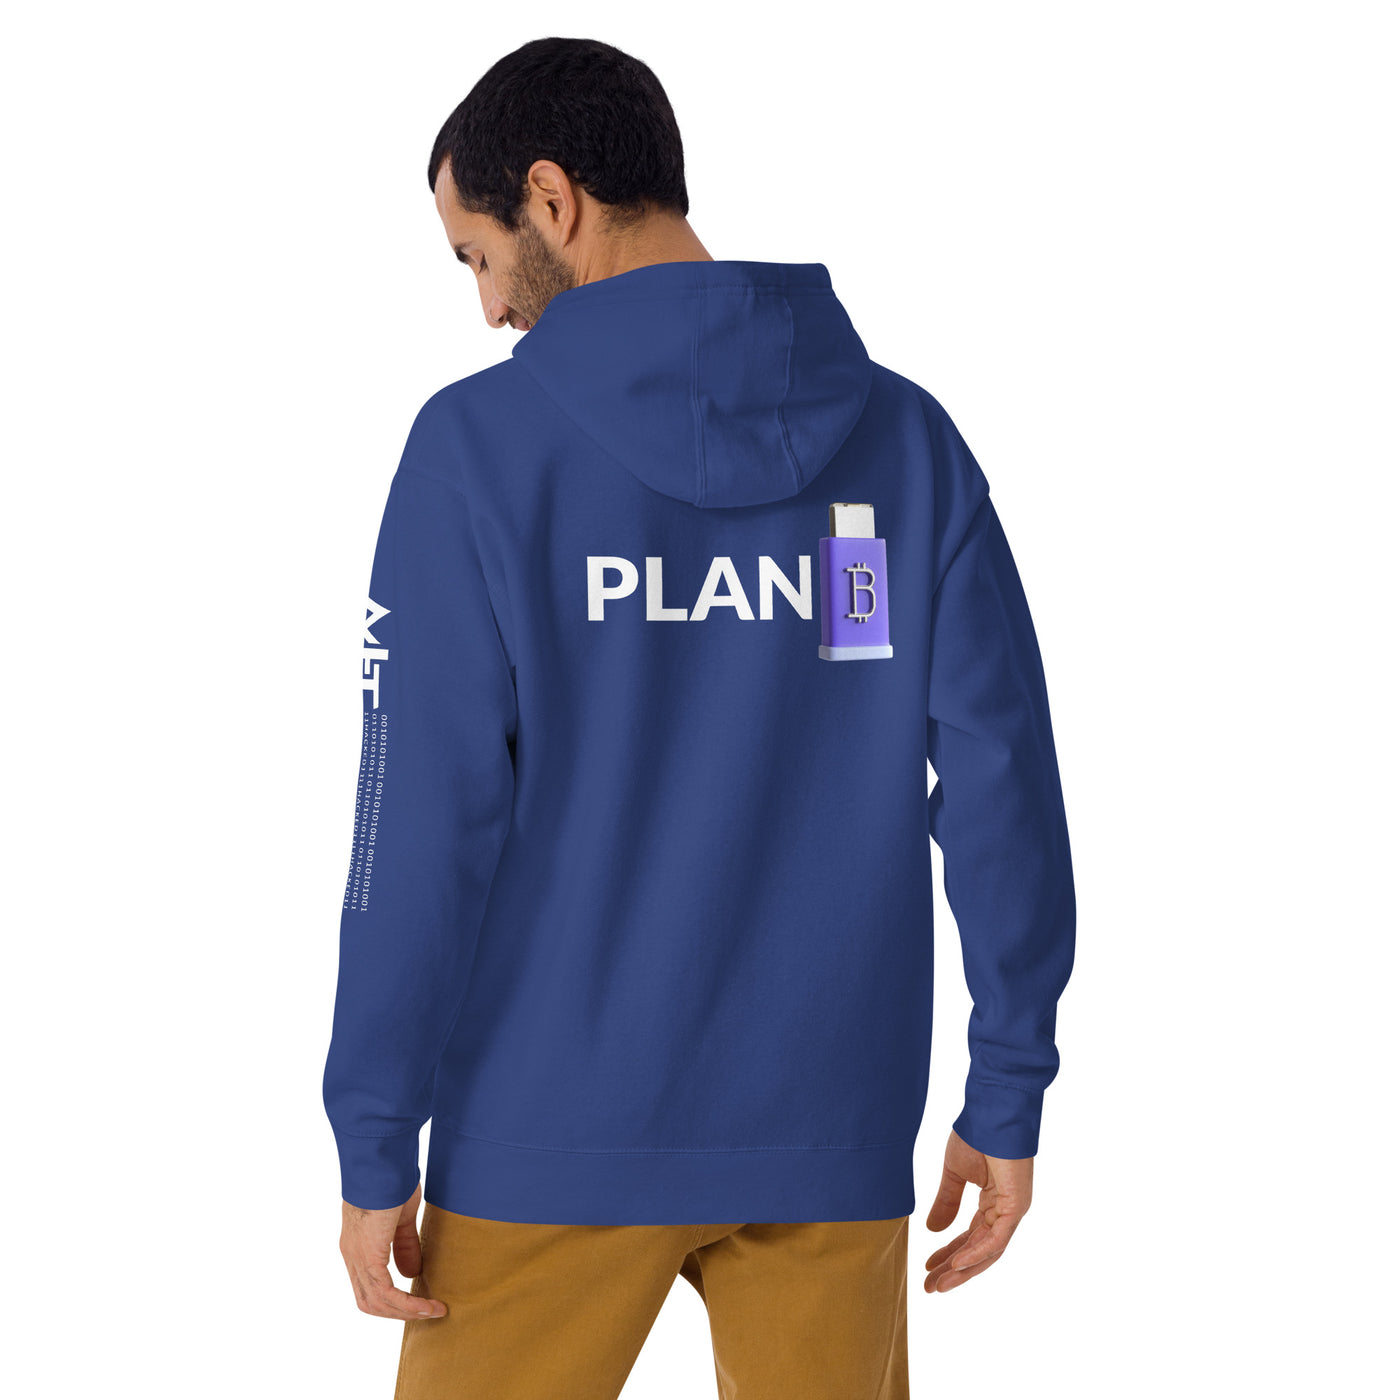 Plan B V4 - Unisex Hoodie (Back Print)